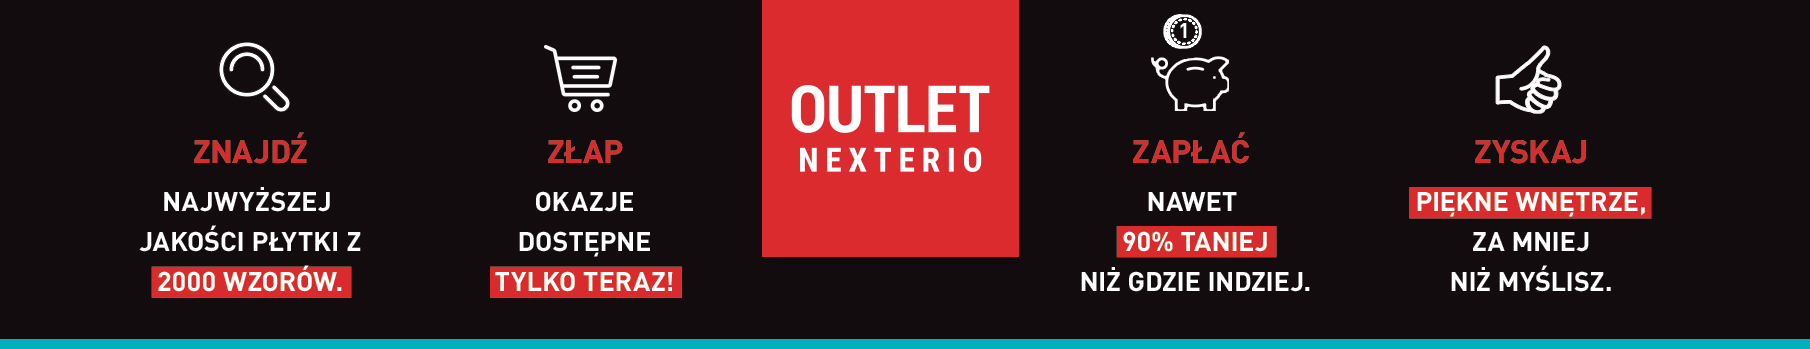 Outlet Nexterio Olsztyn